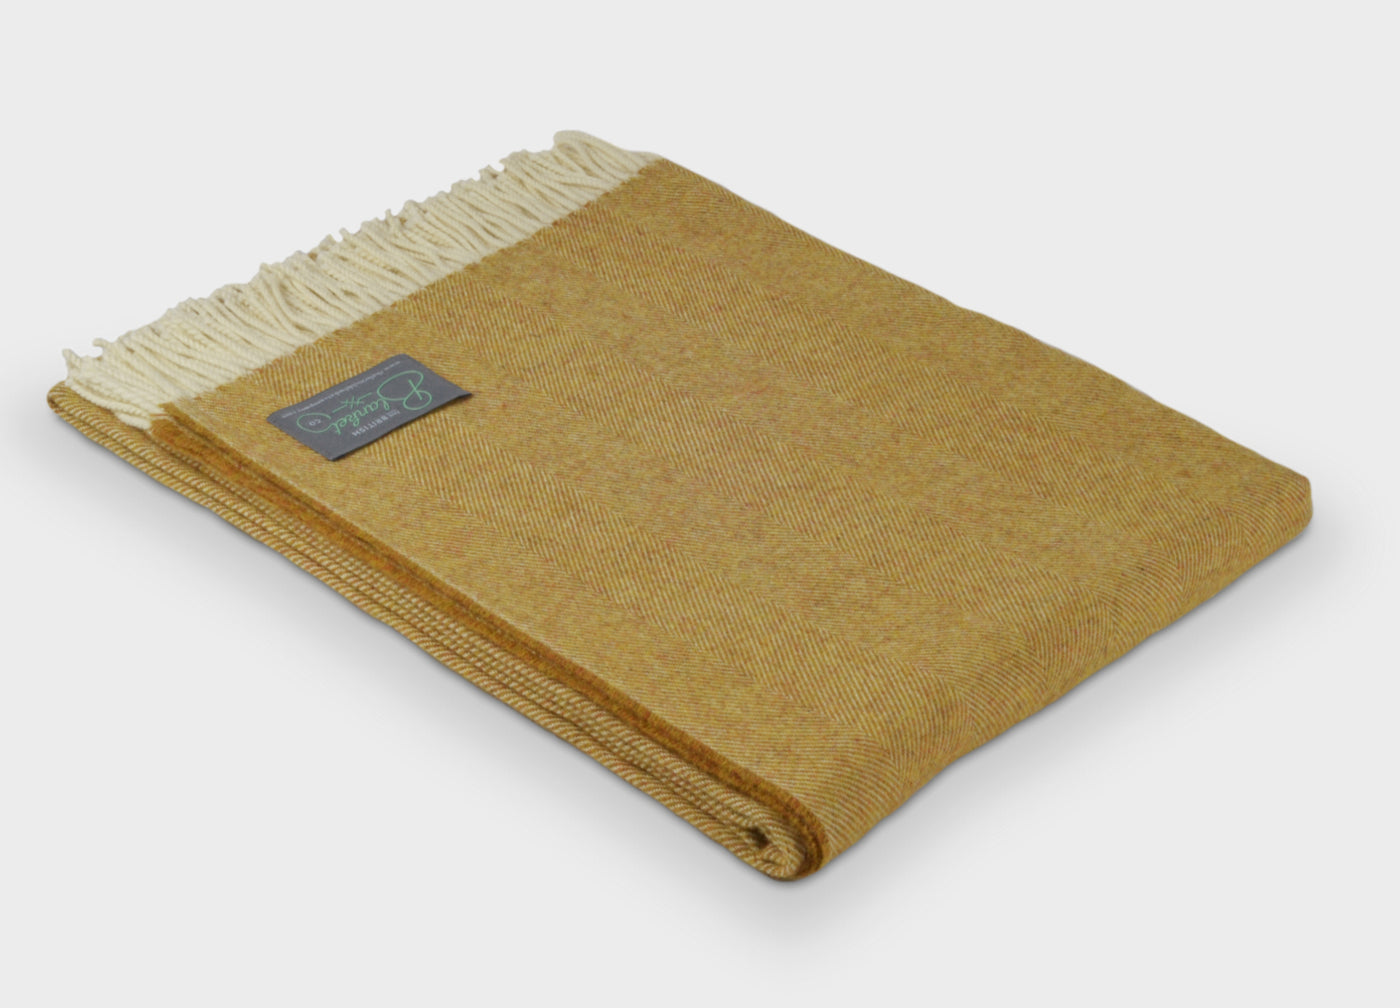 Folded XL yellow merino herringbone wool throw by The British Blanket Company